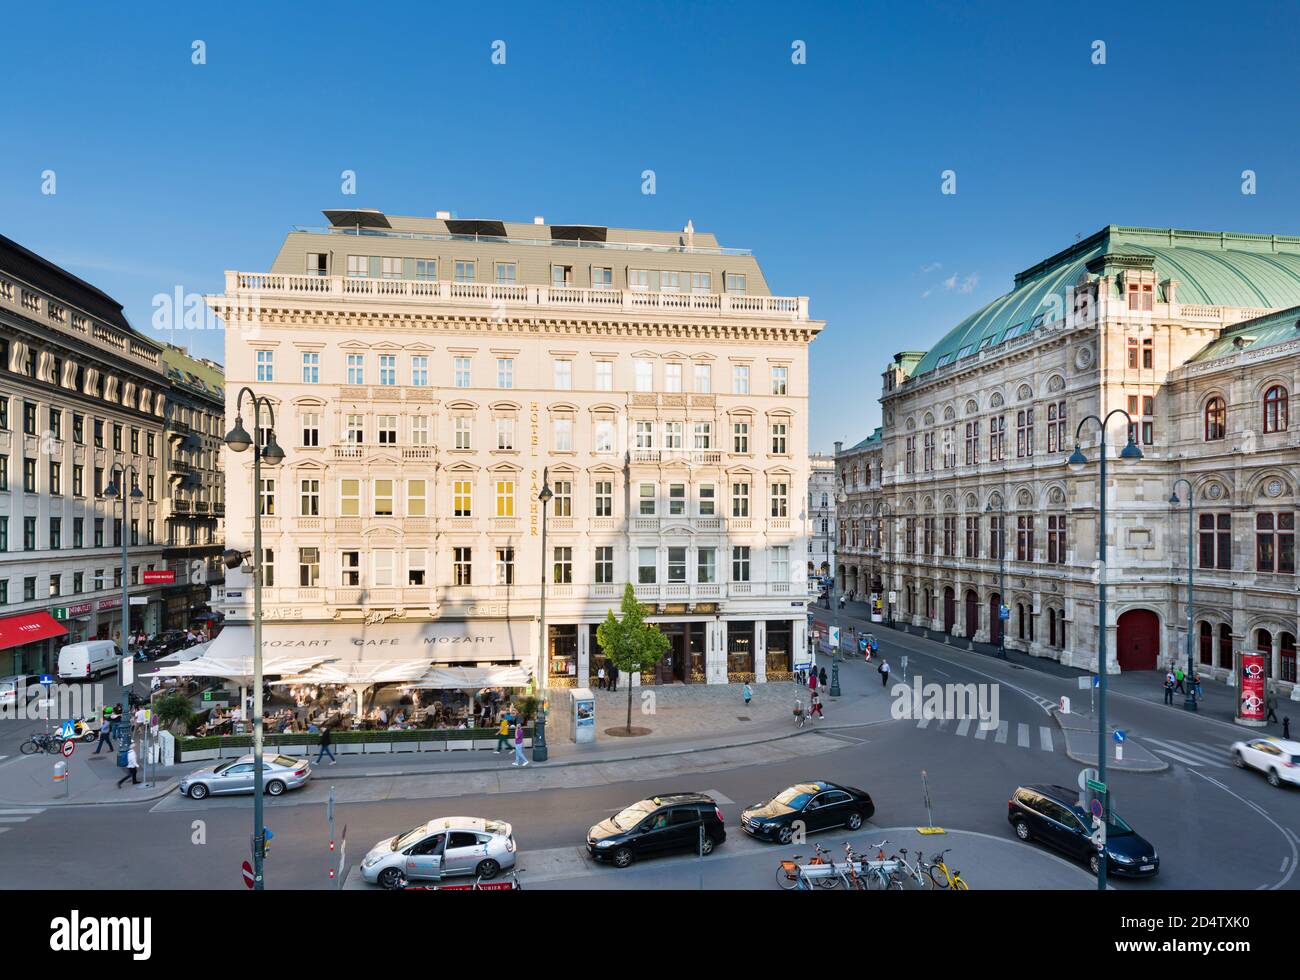 VIENNE - 3 MAI : circulation sur l'Albertinaplatz en face de l'hôtel Sacher et du café Mozart avec l'Opéra à droite à Vienne, Autriche, le 3 mai 20 Banque D'Images